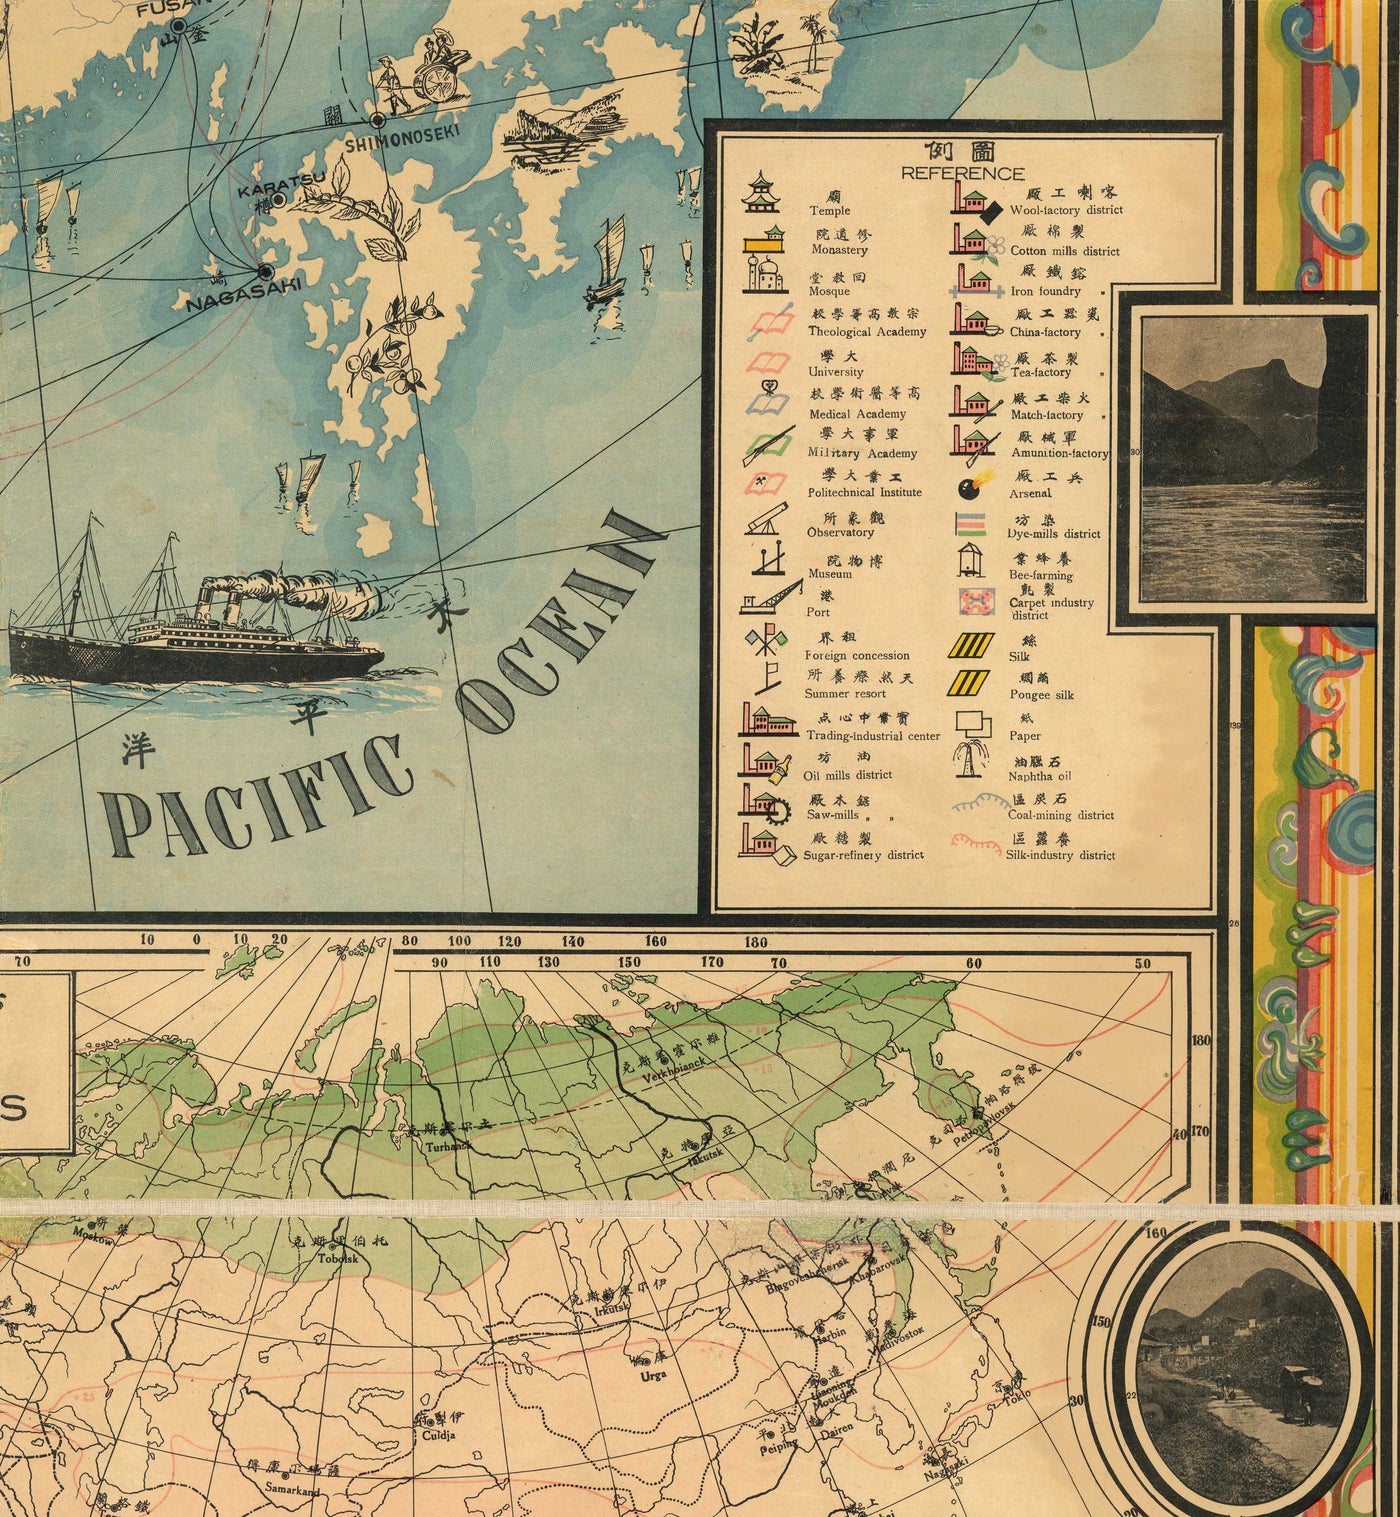 Raro mapa pictórico antiguo de China en 1931 por G Primakoff - Taiwán, Hainan, Hong Kong, Hanoi, Liaoning